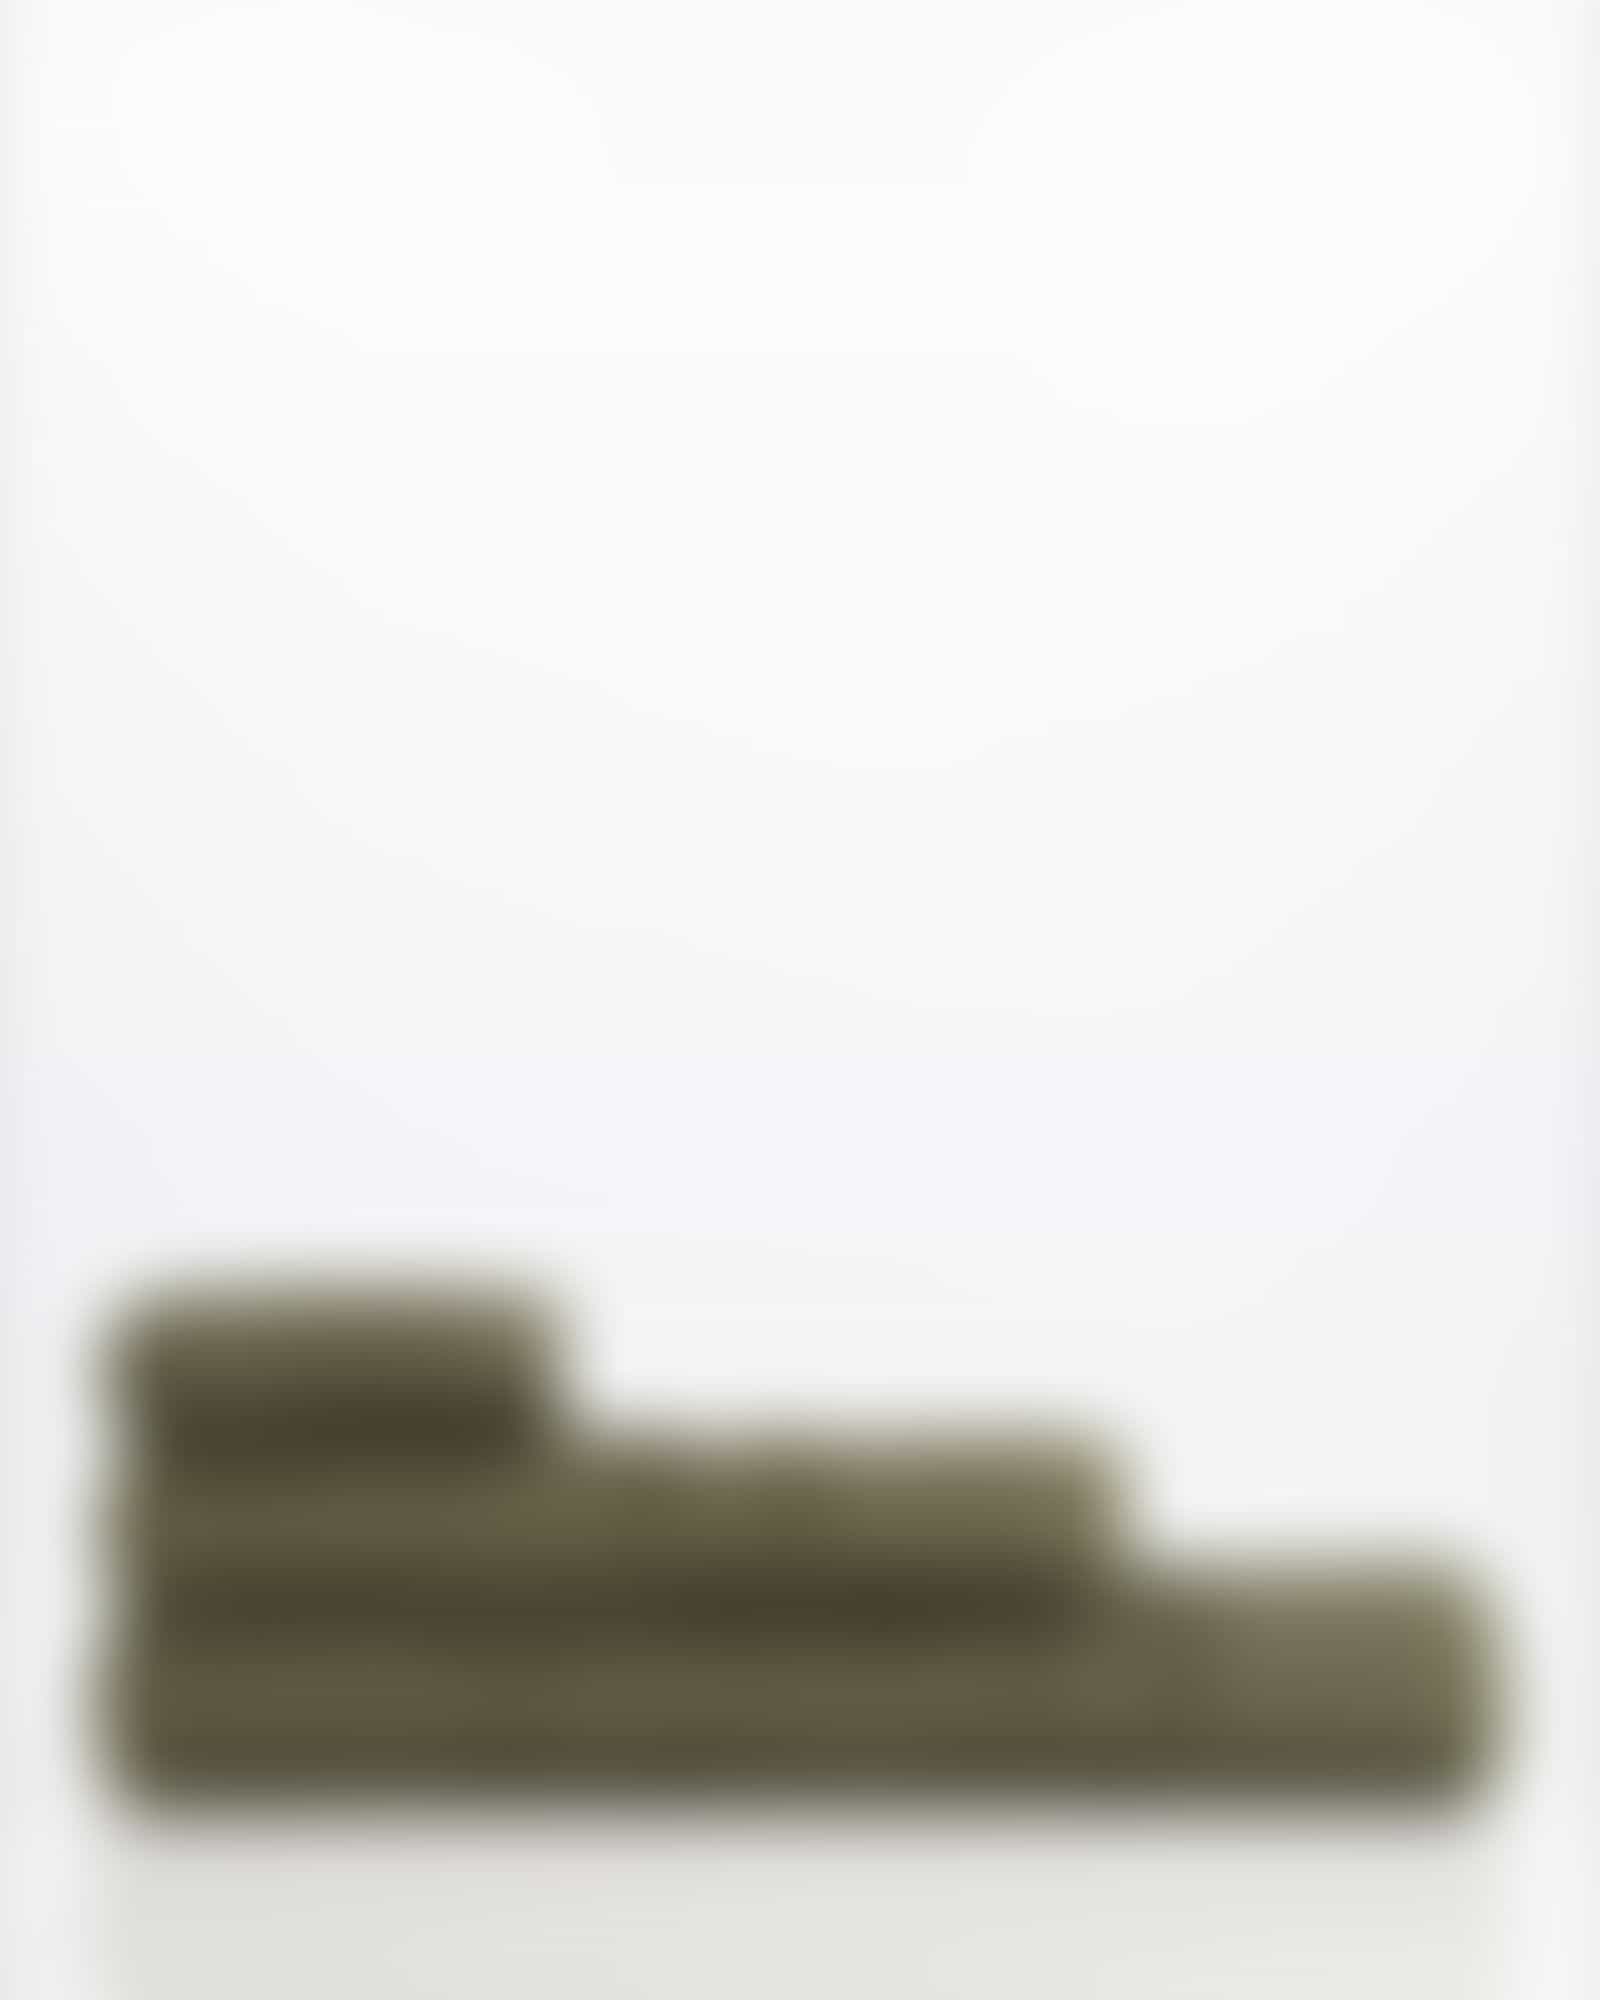 Möve Handtücher Wellbeing Perlstruktur - Farbe: sea grass - 677 - Duschtuch 67x140 cm Detailbild 3